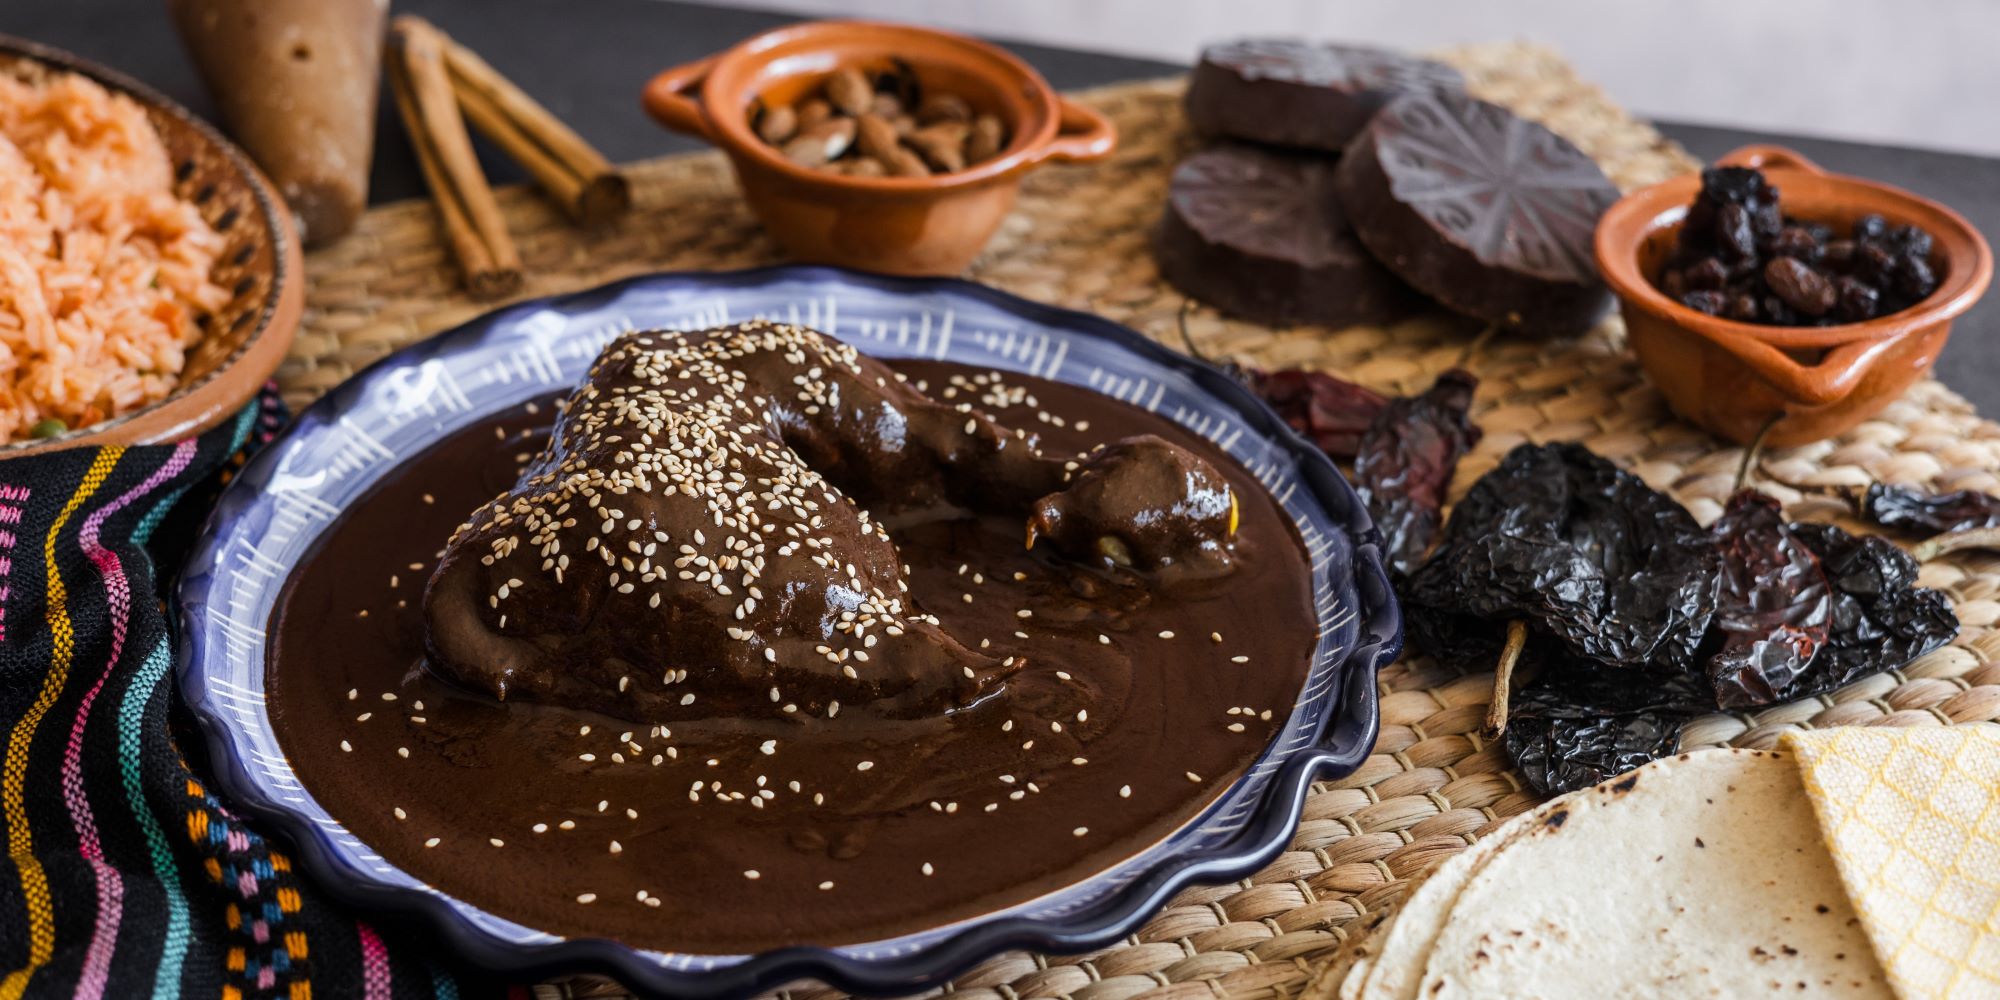 Gastronomía poblana, mole poblano, chocolate y arroz en platos típicos del estado de Puebla.